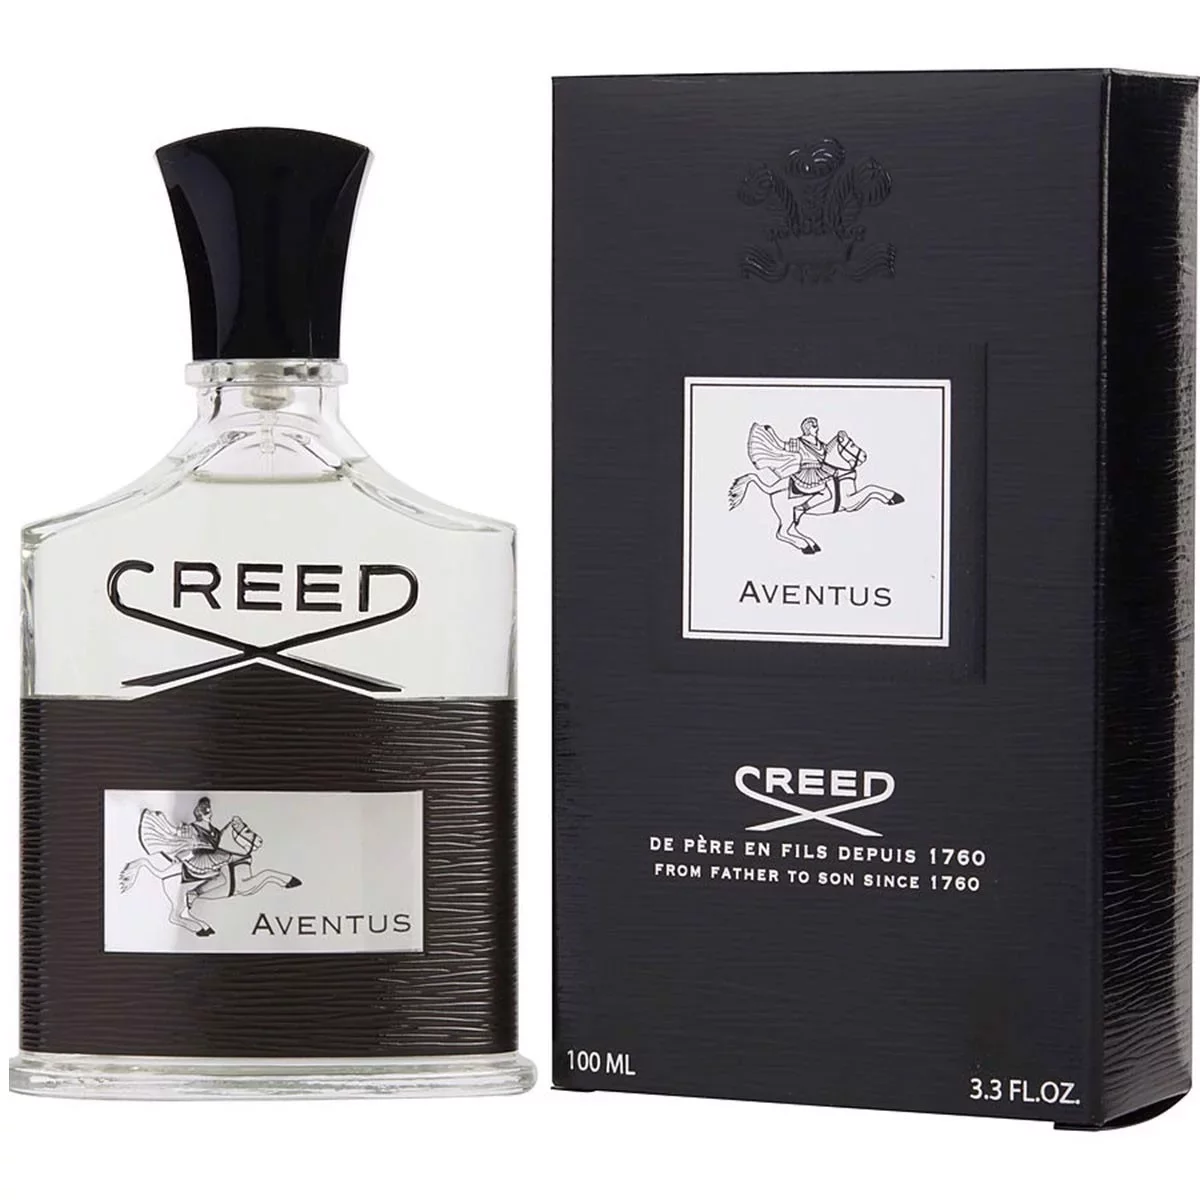 Aventus Creed - Nước hoa của người đàn ông trưởng thành